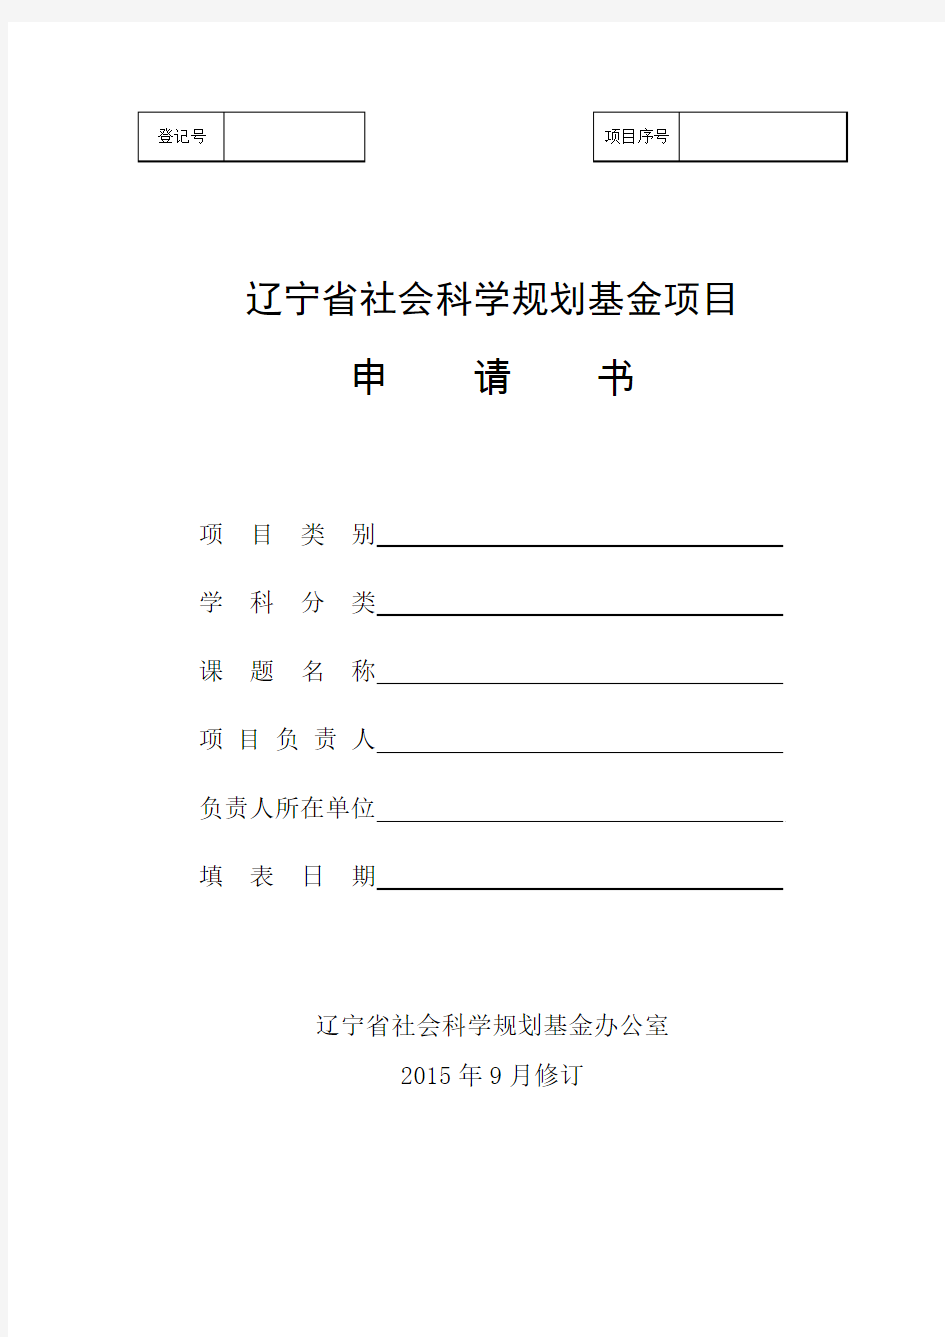 辽宁省社会科学规划基金项目申请书(2015年修订)